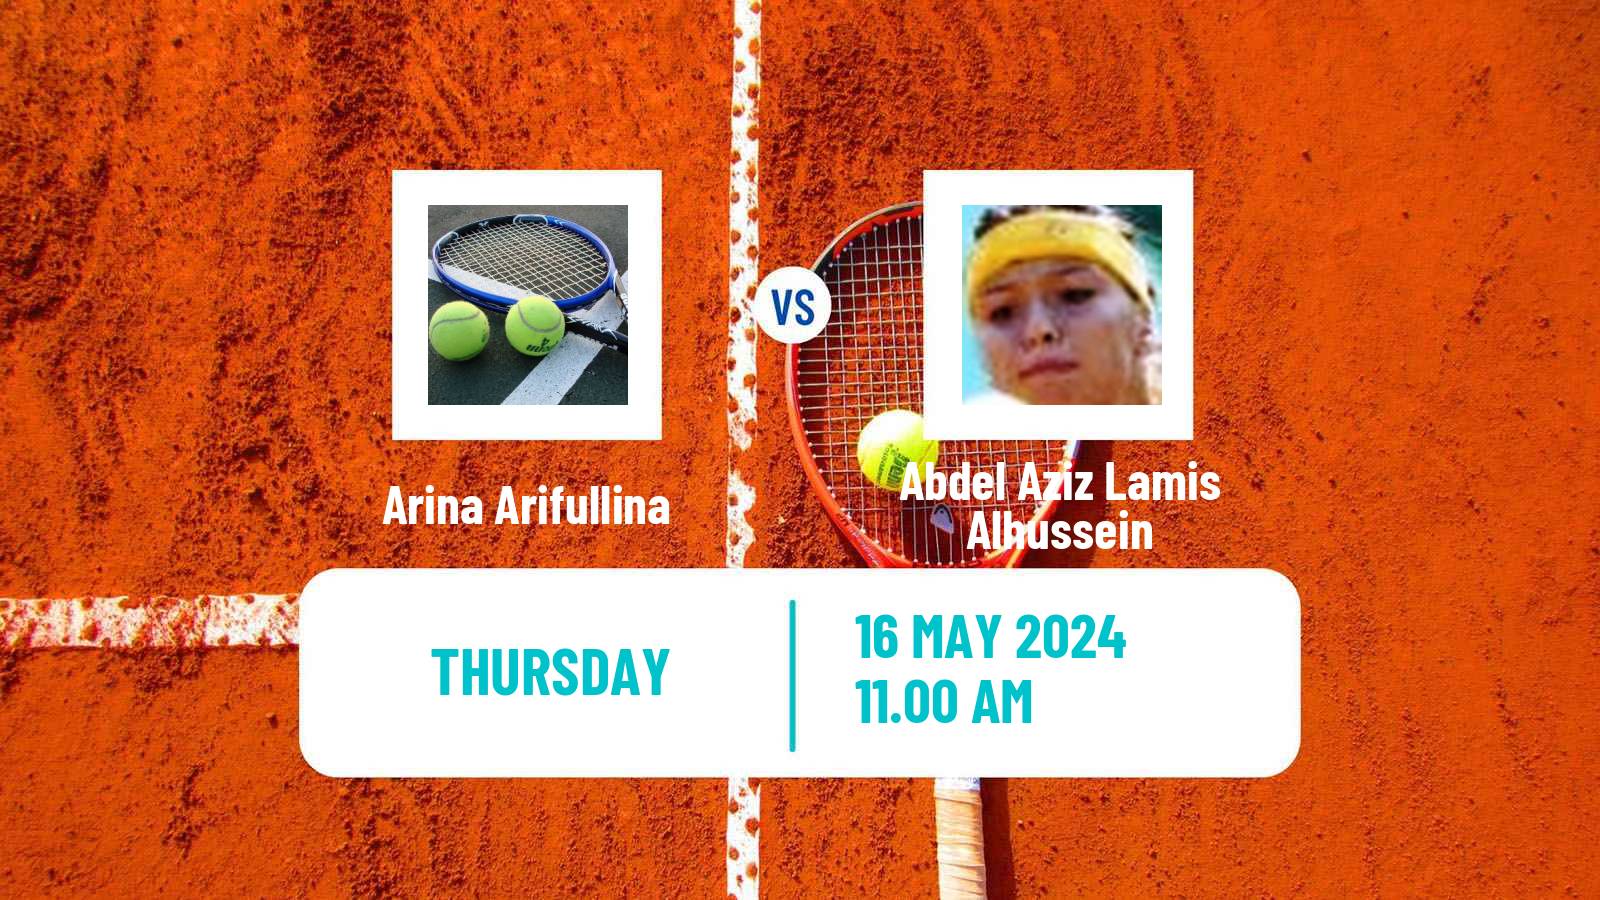 Tennis ITF W15 Monastir 18 Women Arina Arifullina - Abdel Aziz Lamis Alhussein